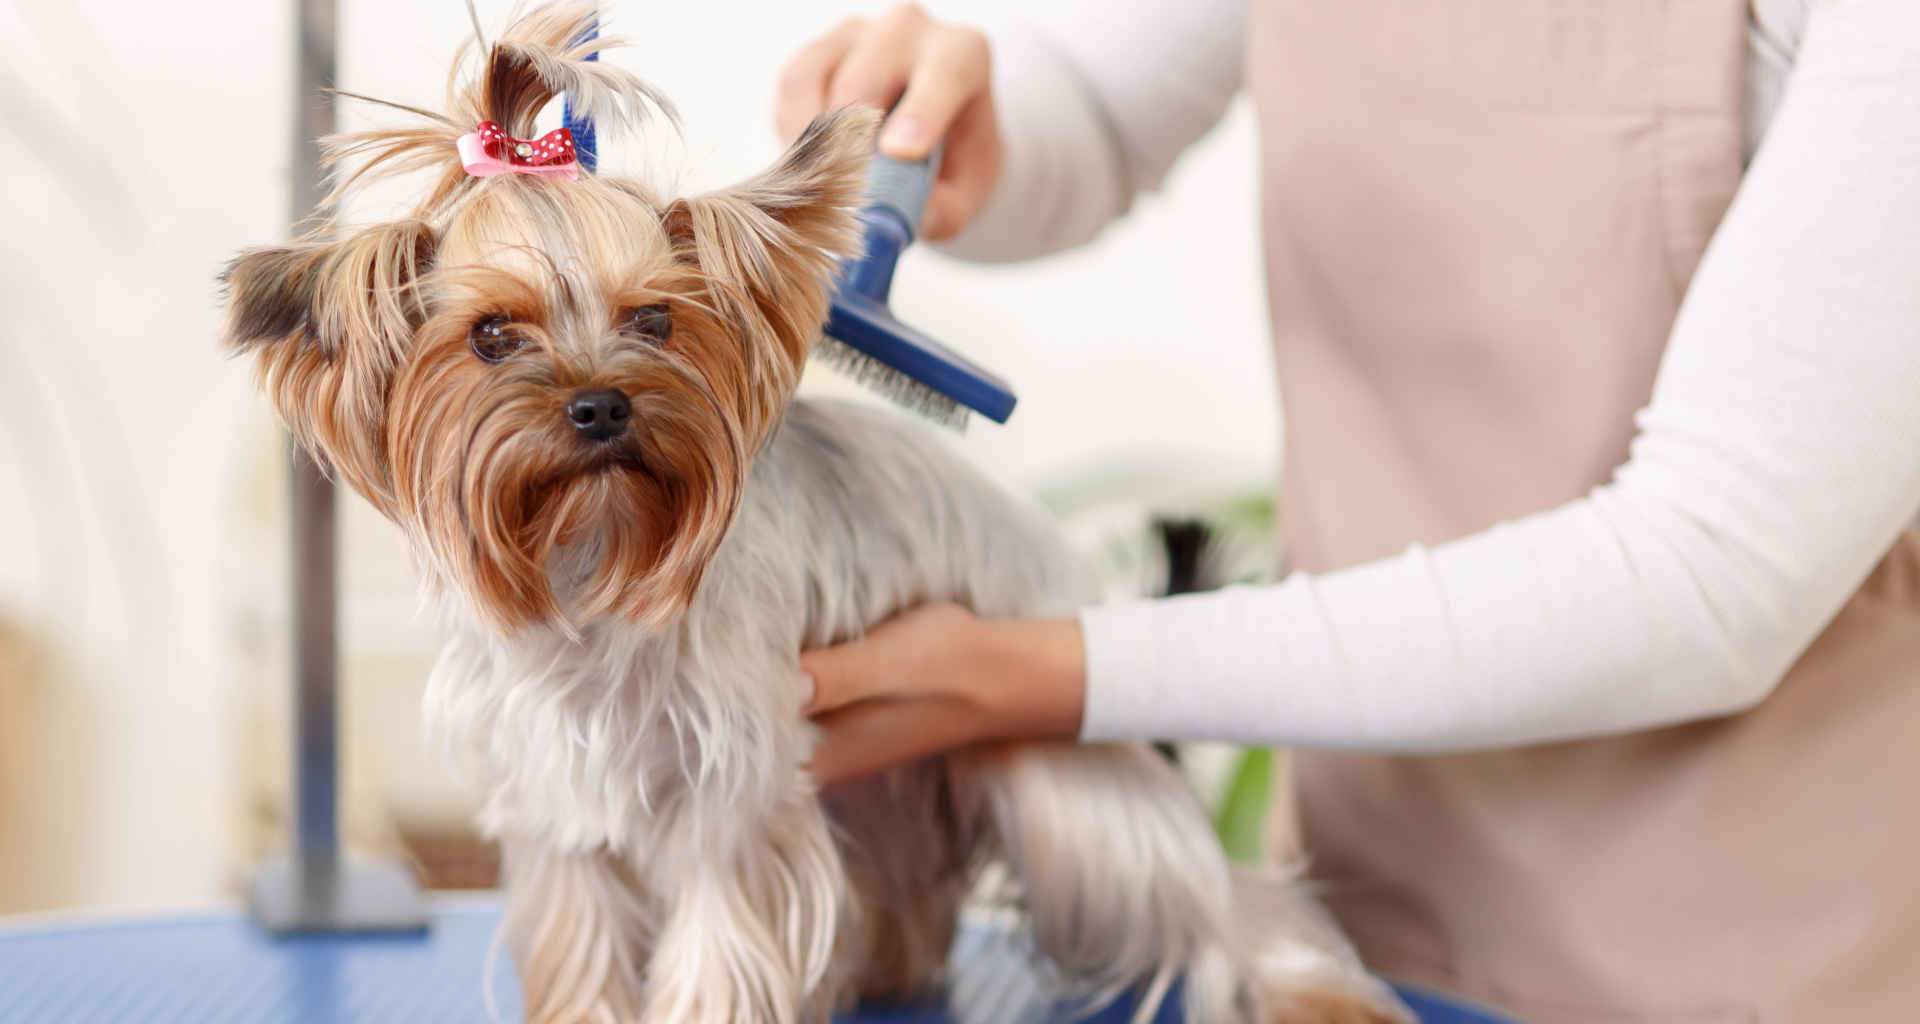 Iščete pasji salon za nego in friziranje psov? Pomagali vam bomo najti pravi pasji salon za nego in friziranje psov